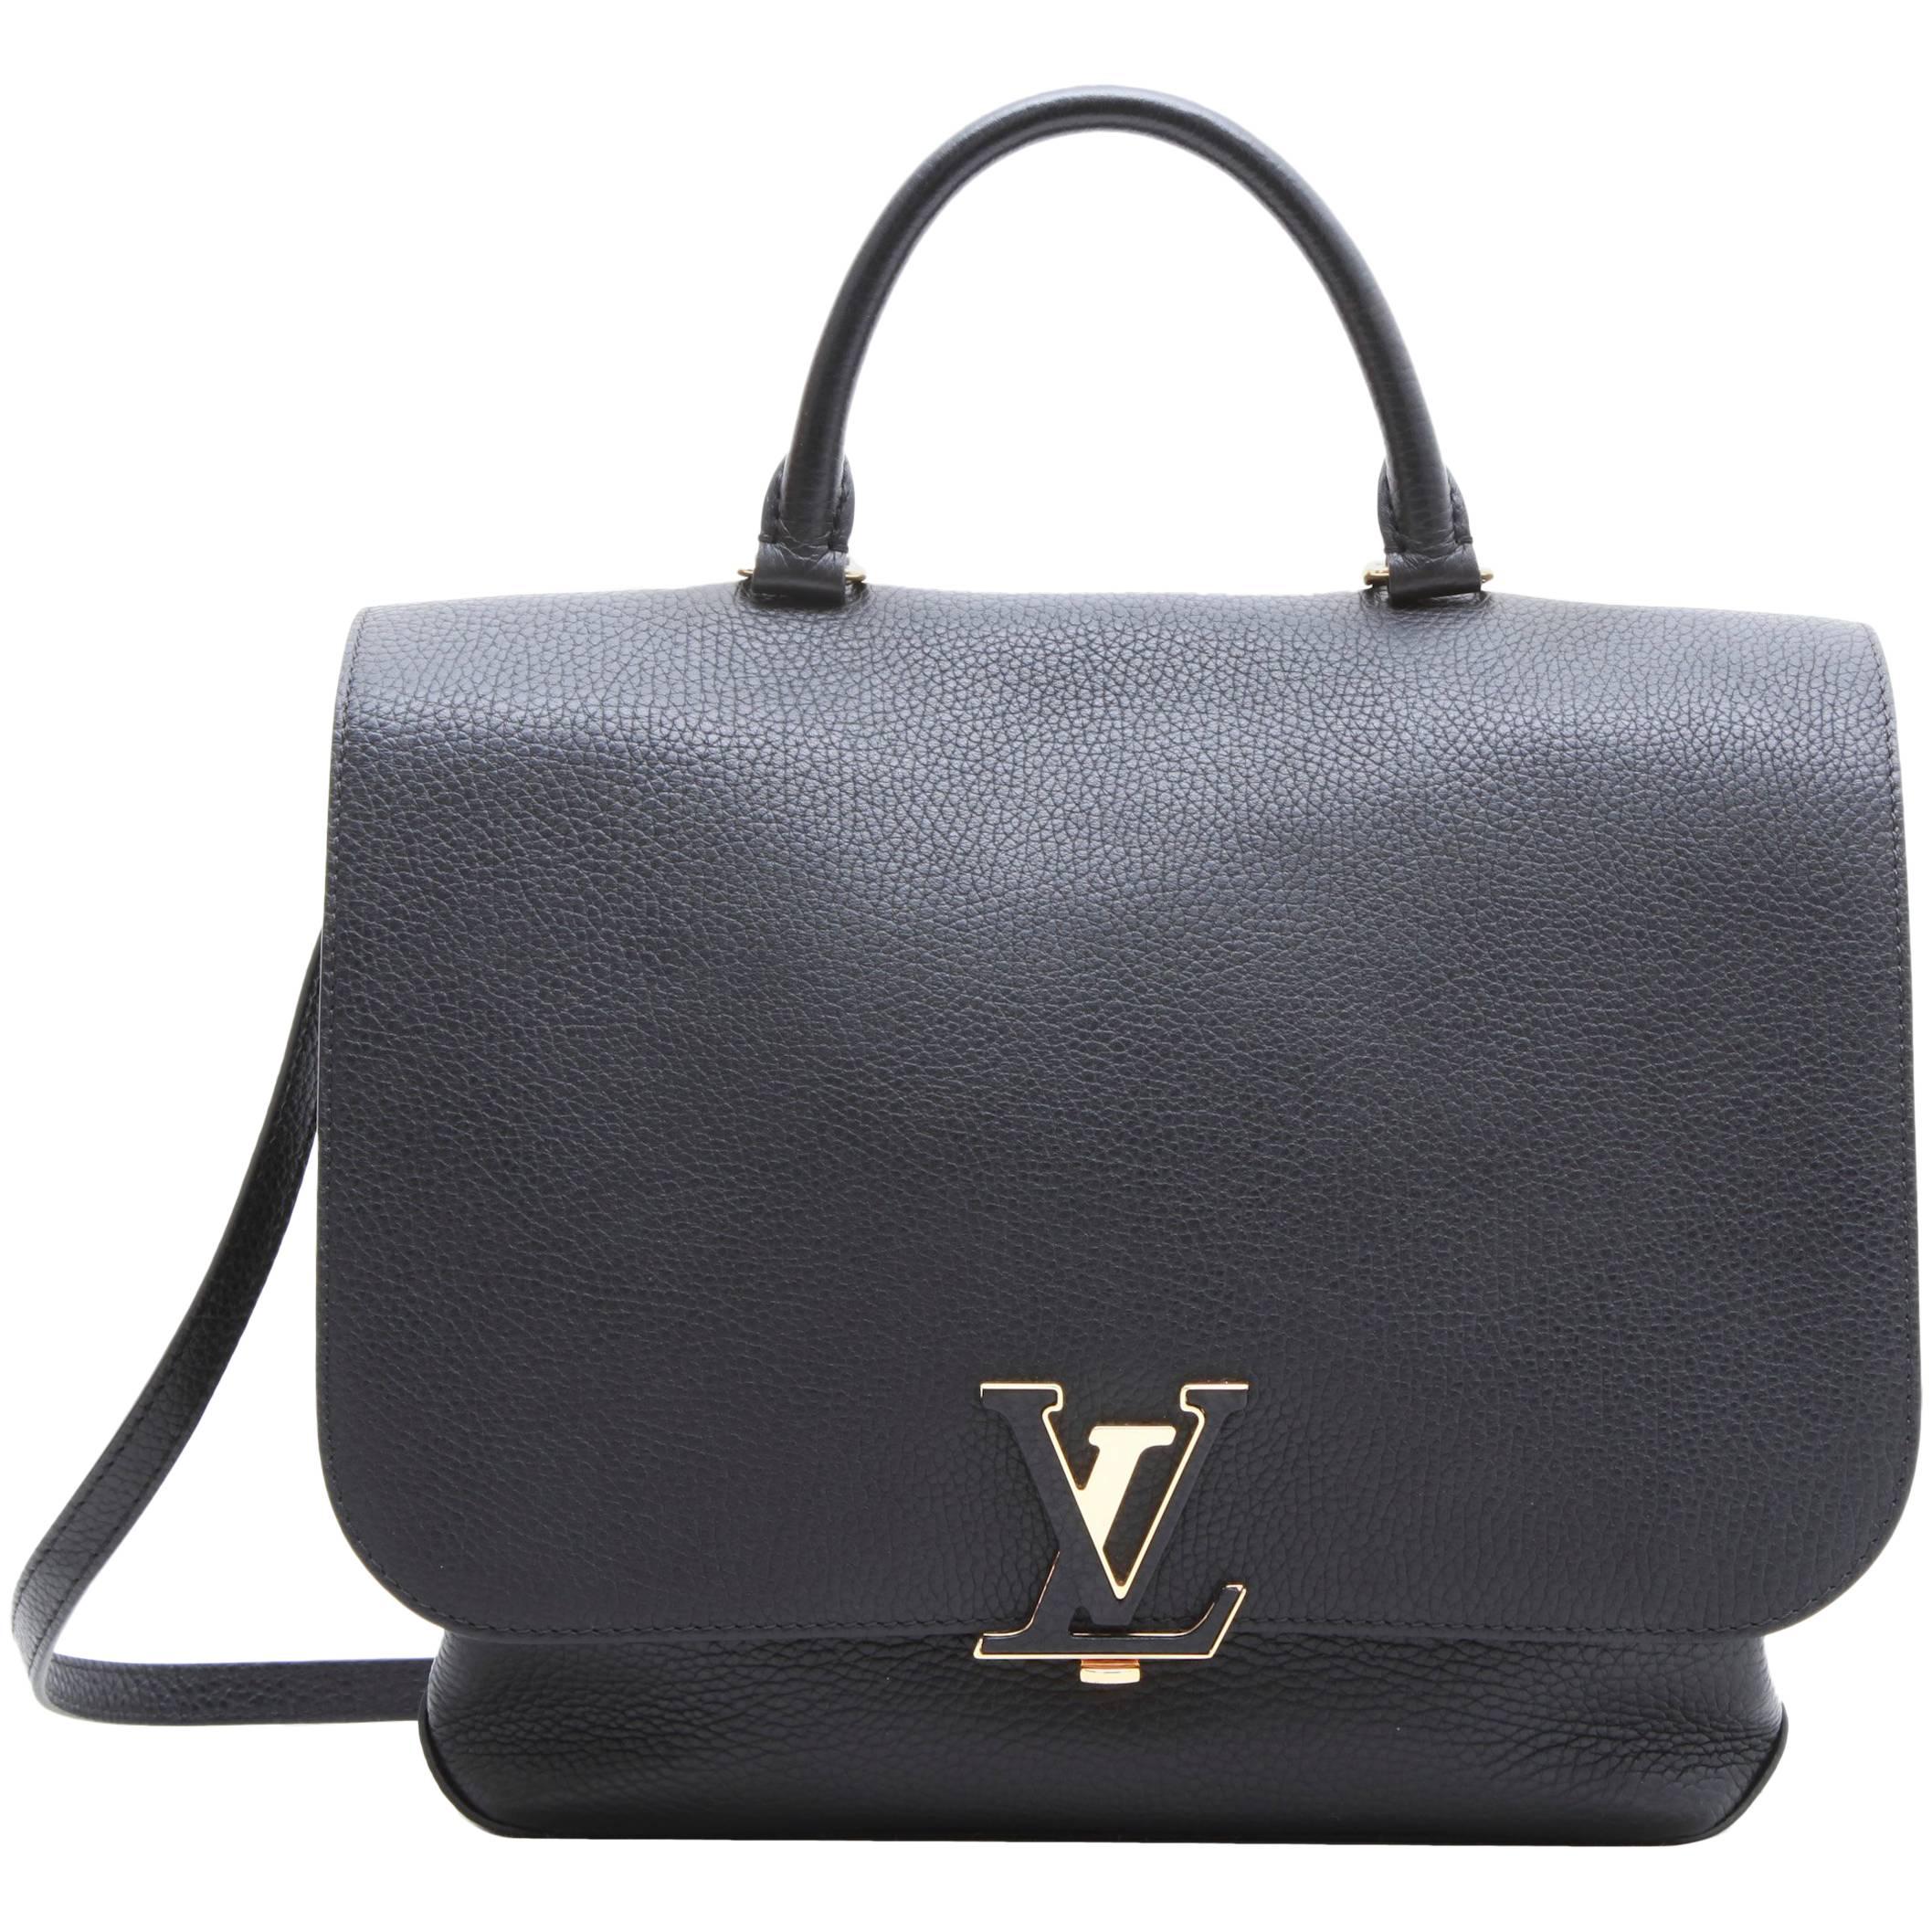 Louis Vuitton "Volta" Shoulder Bag in Black Taurillon Leather